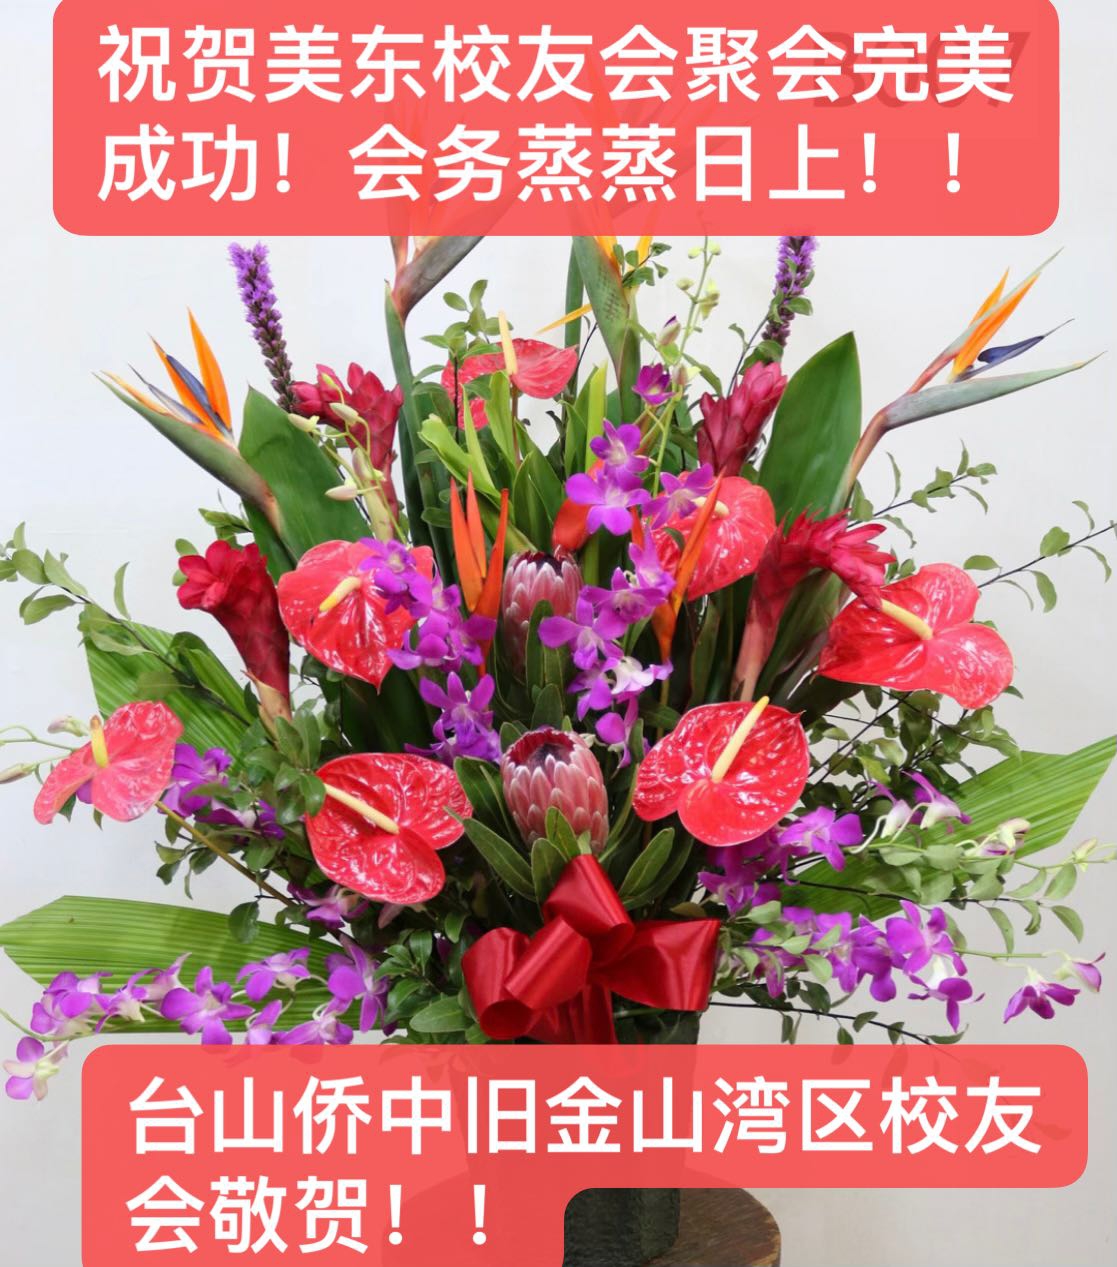 WeChat Image_20231016153602.jpg